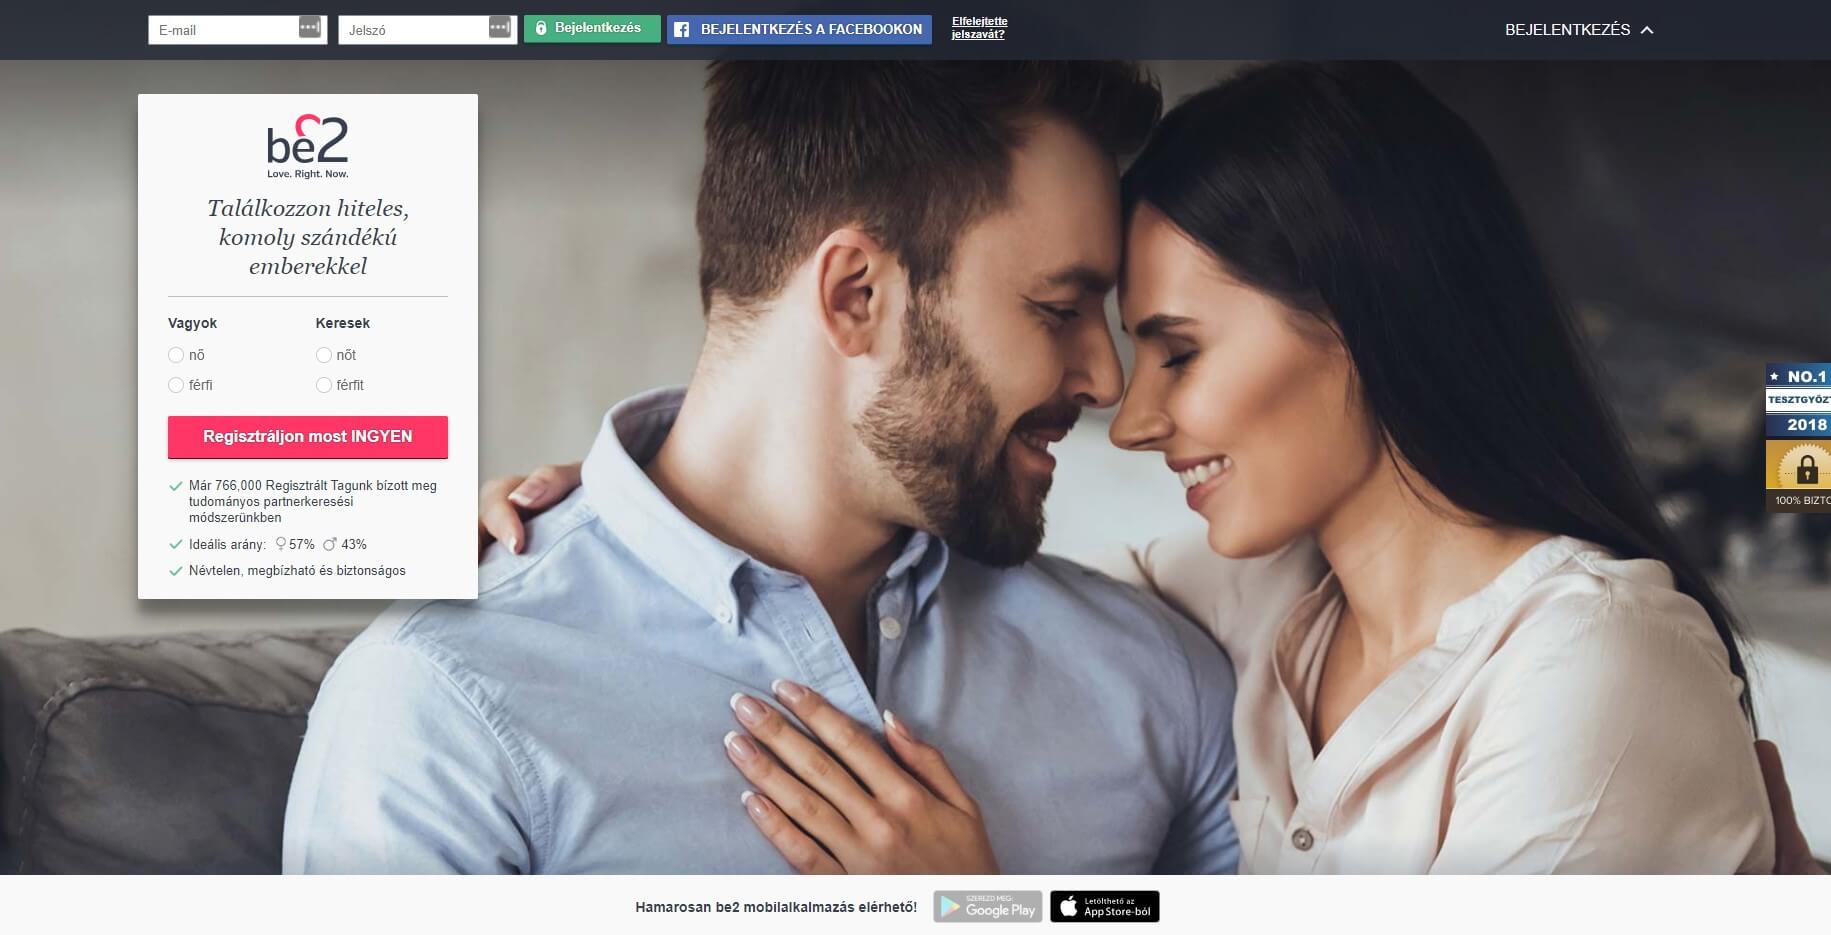 megbízható partnerkereső oldalak online társkereső, meddig kell várni az első randevú után